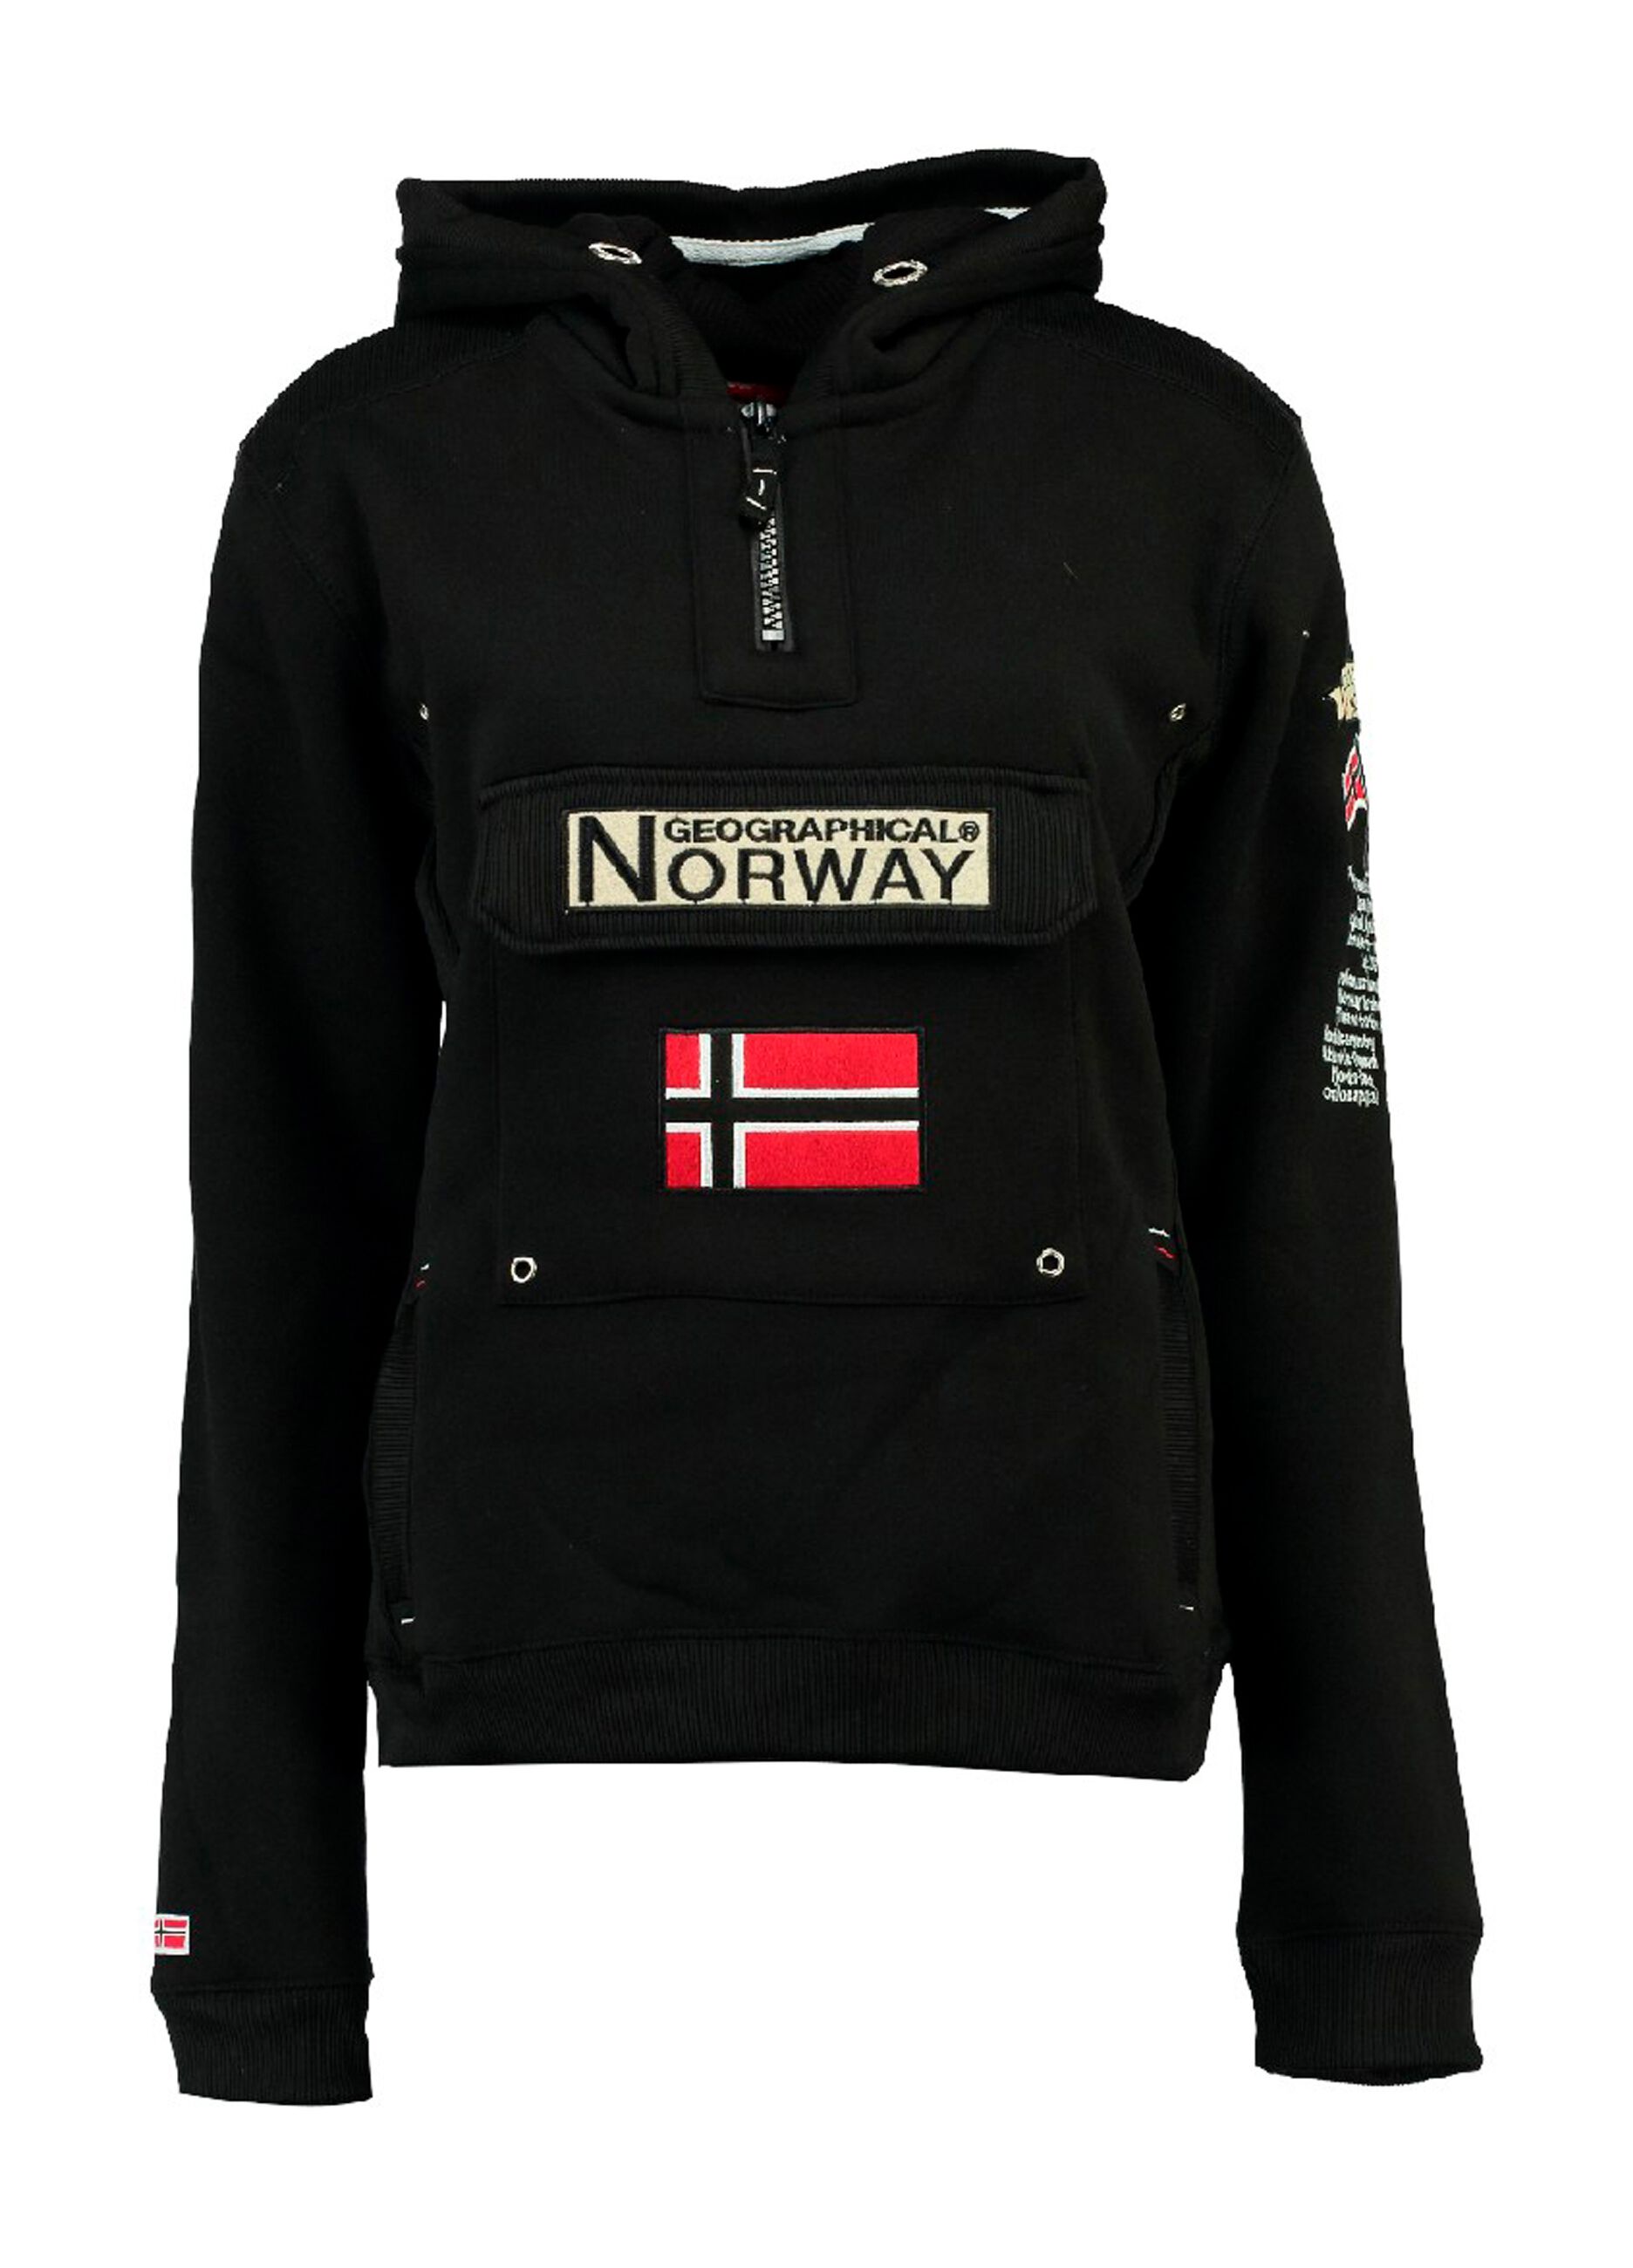 Geographical Norway heavy sweatshirt with hood